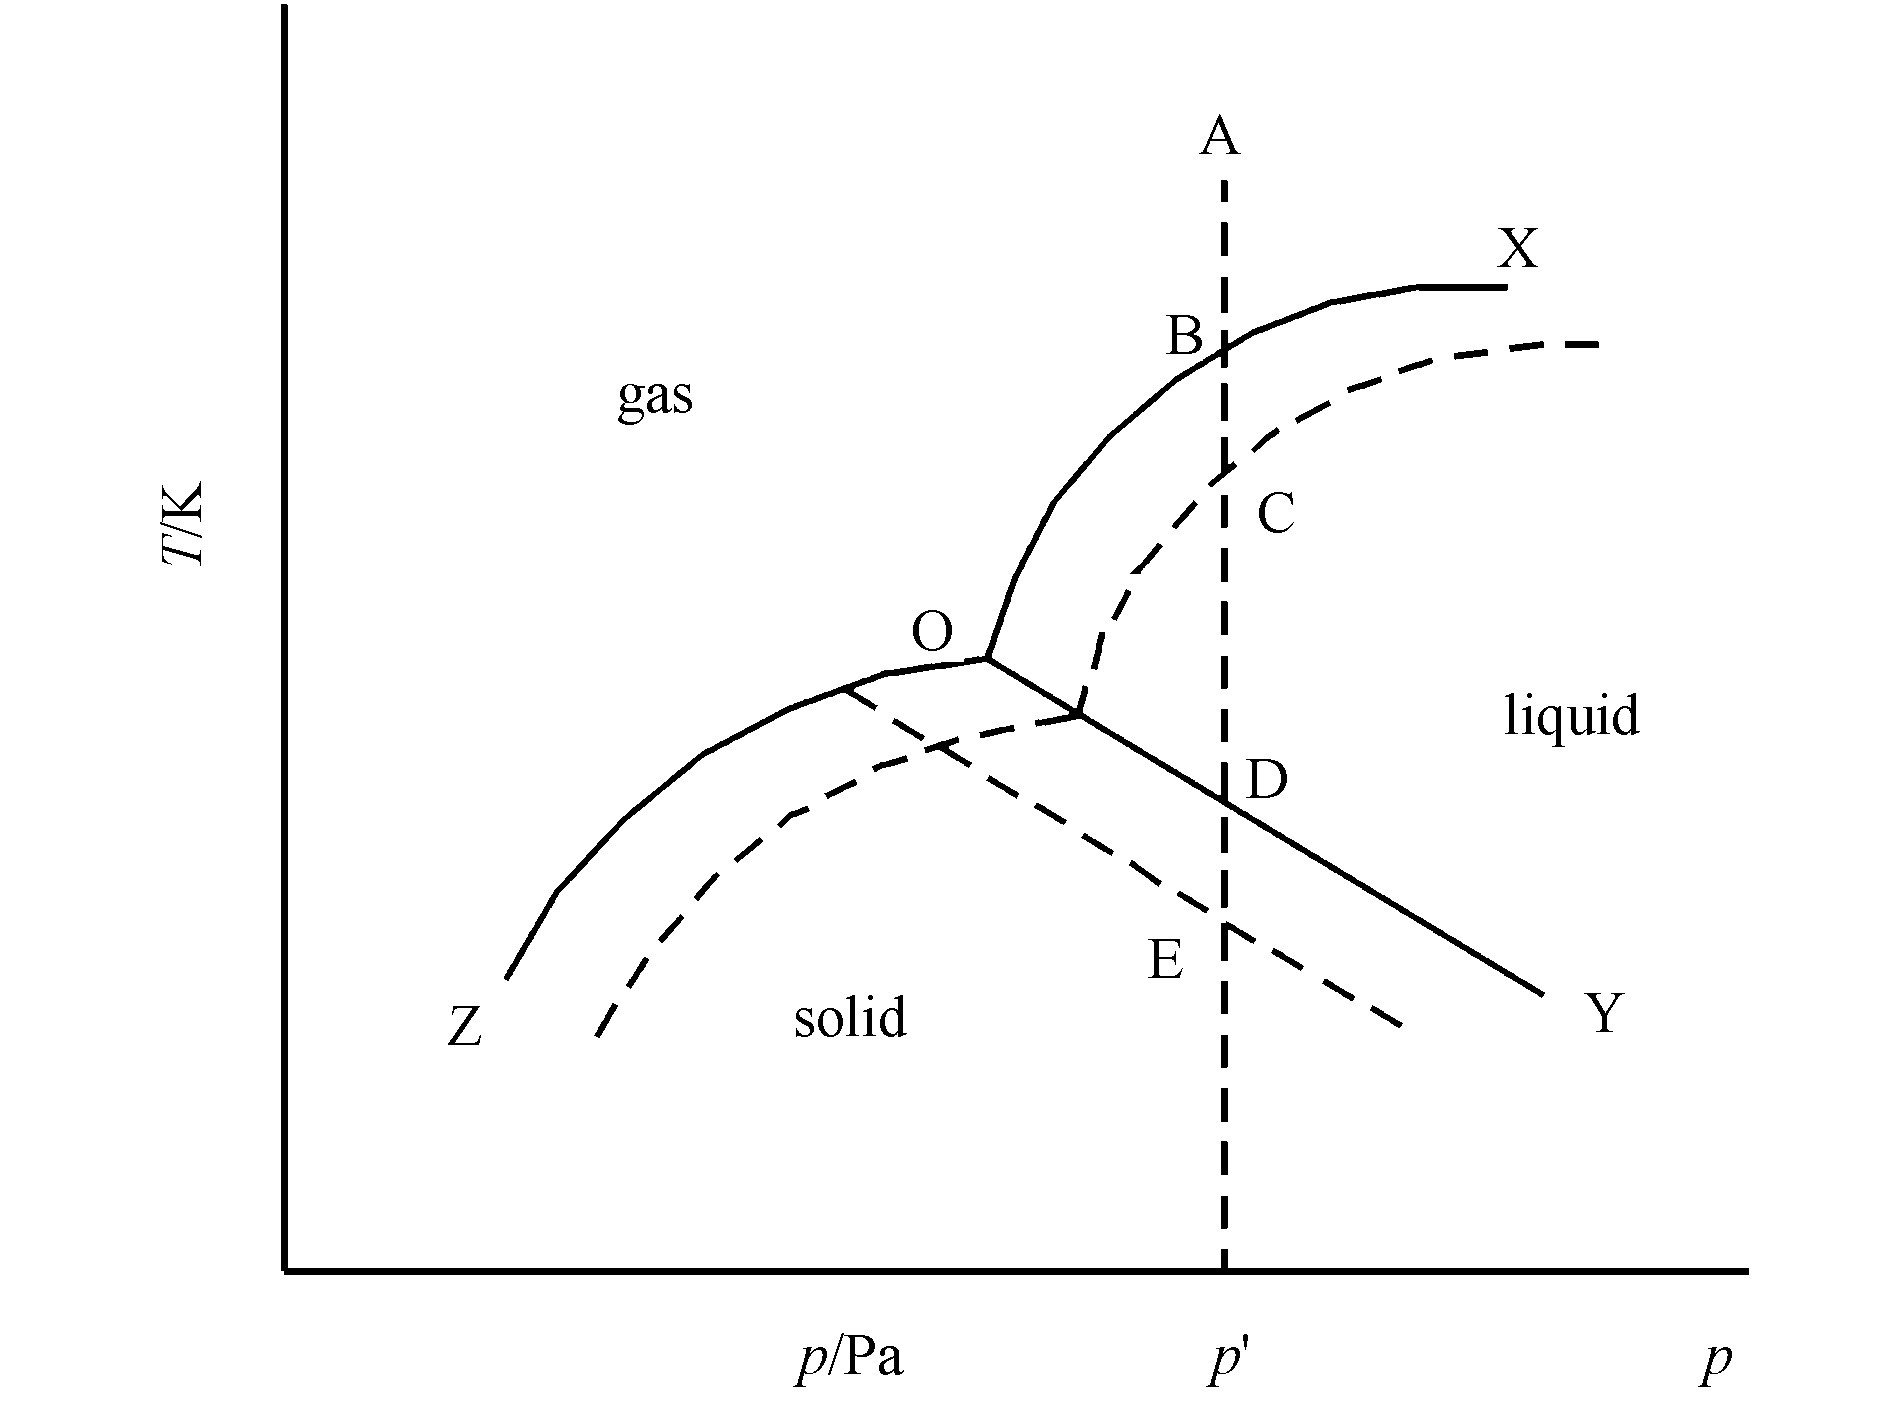 图3 单元系统相变过程图
Fig.3 Diagram of phase change